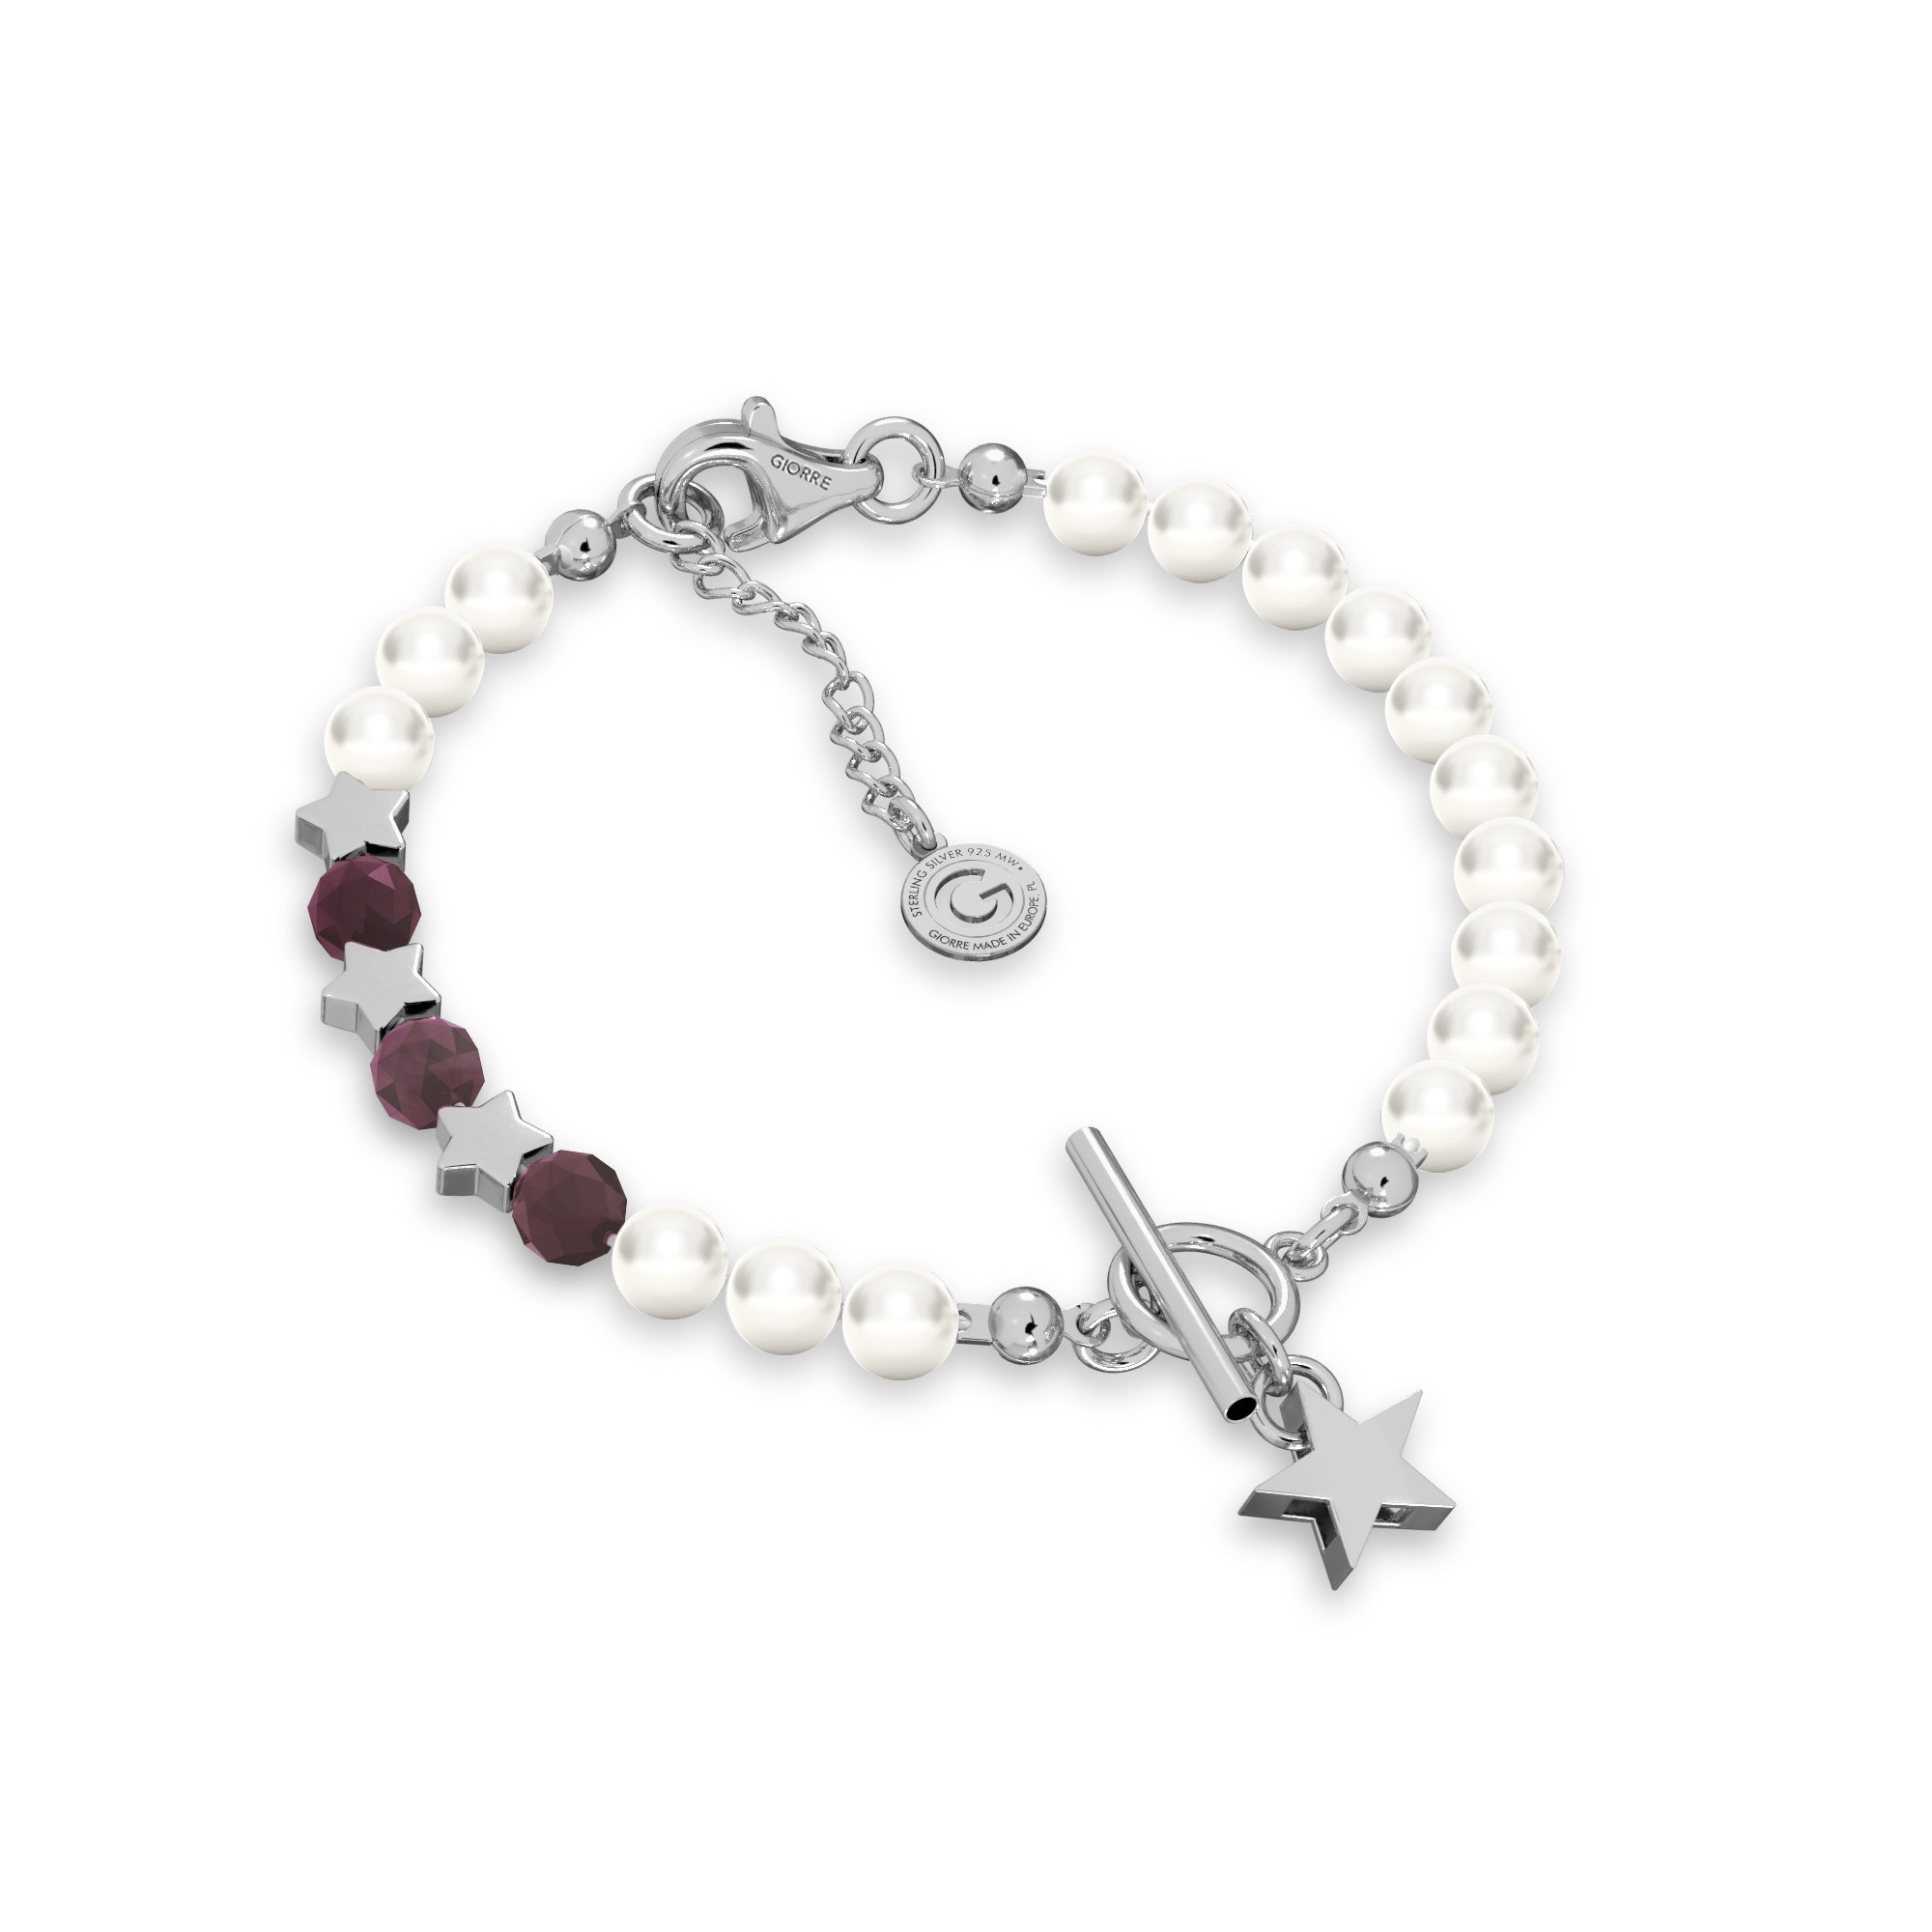 Rubinowa bransoletka z perłami i gwiazdkami, srebro 925